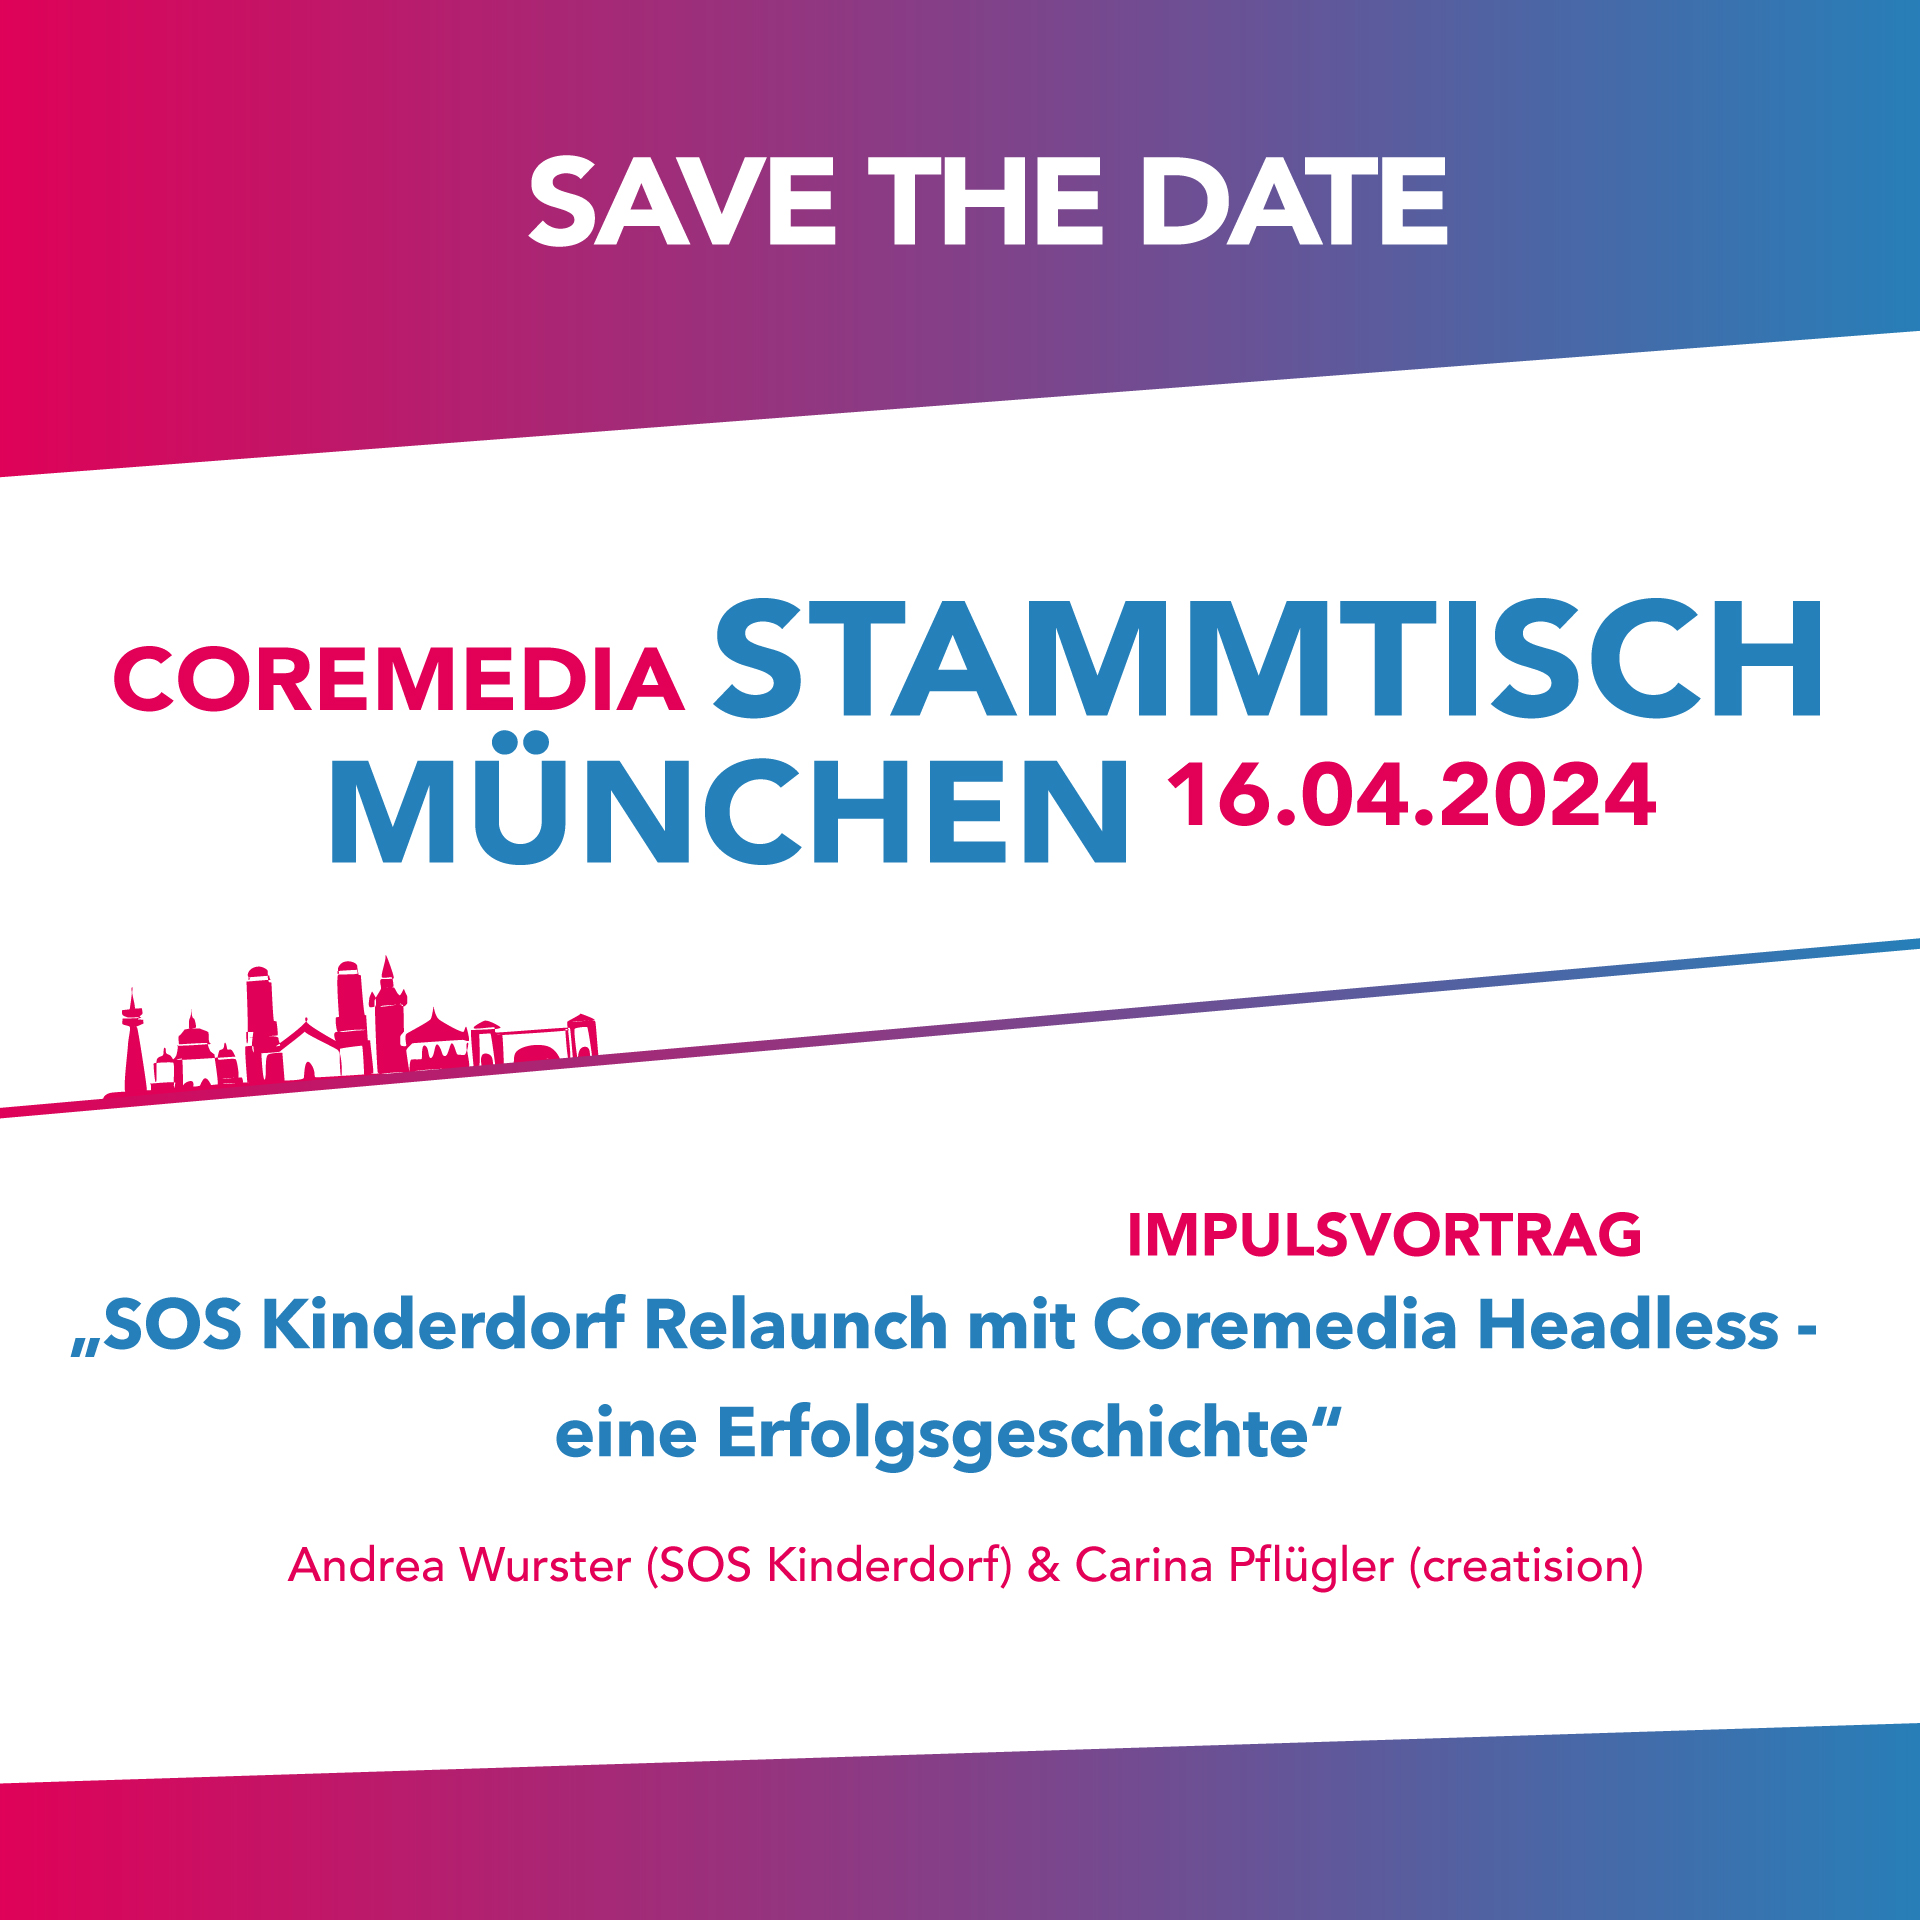 CoreMedia Stammtisch München - 16.04.2024 - Safe the Date